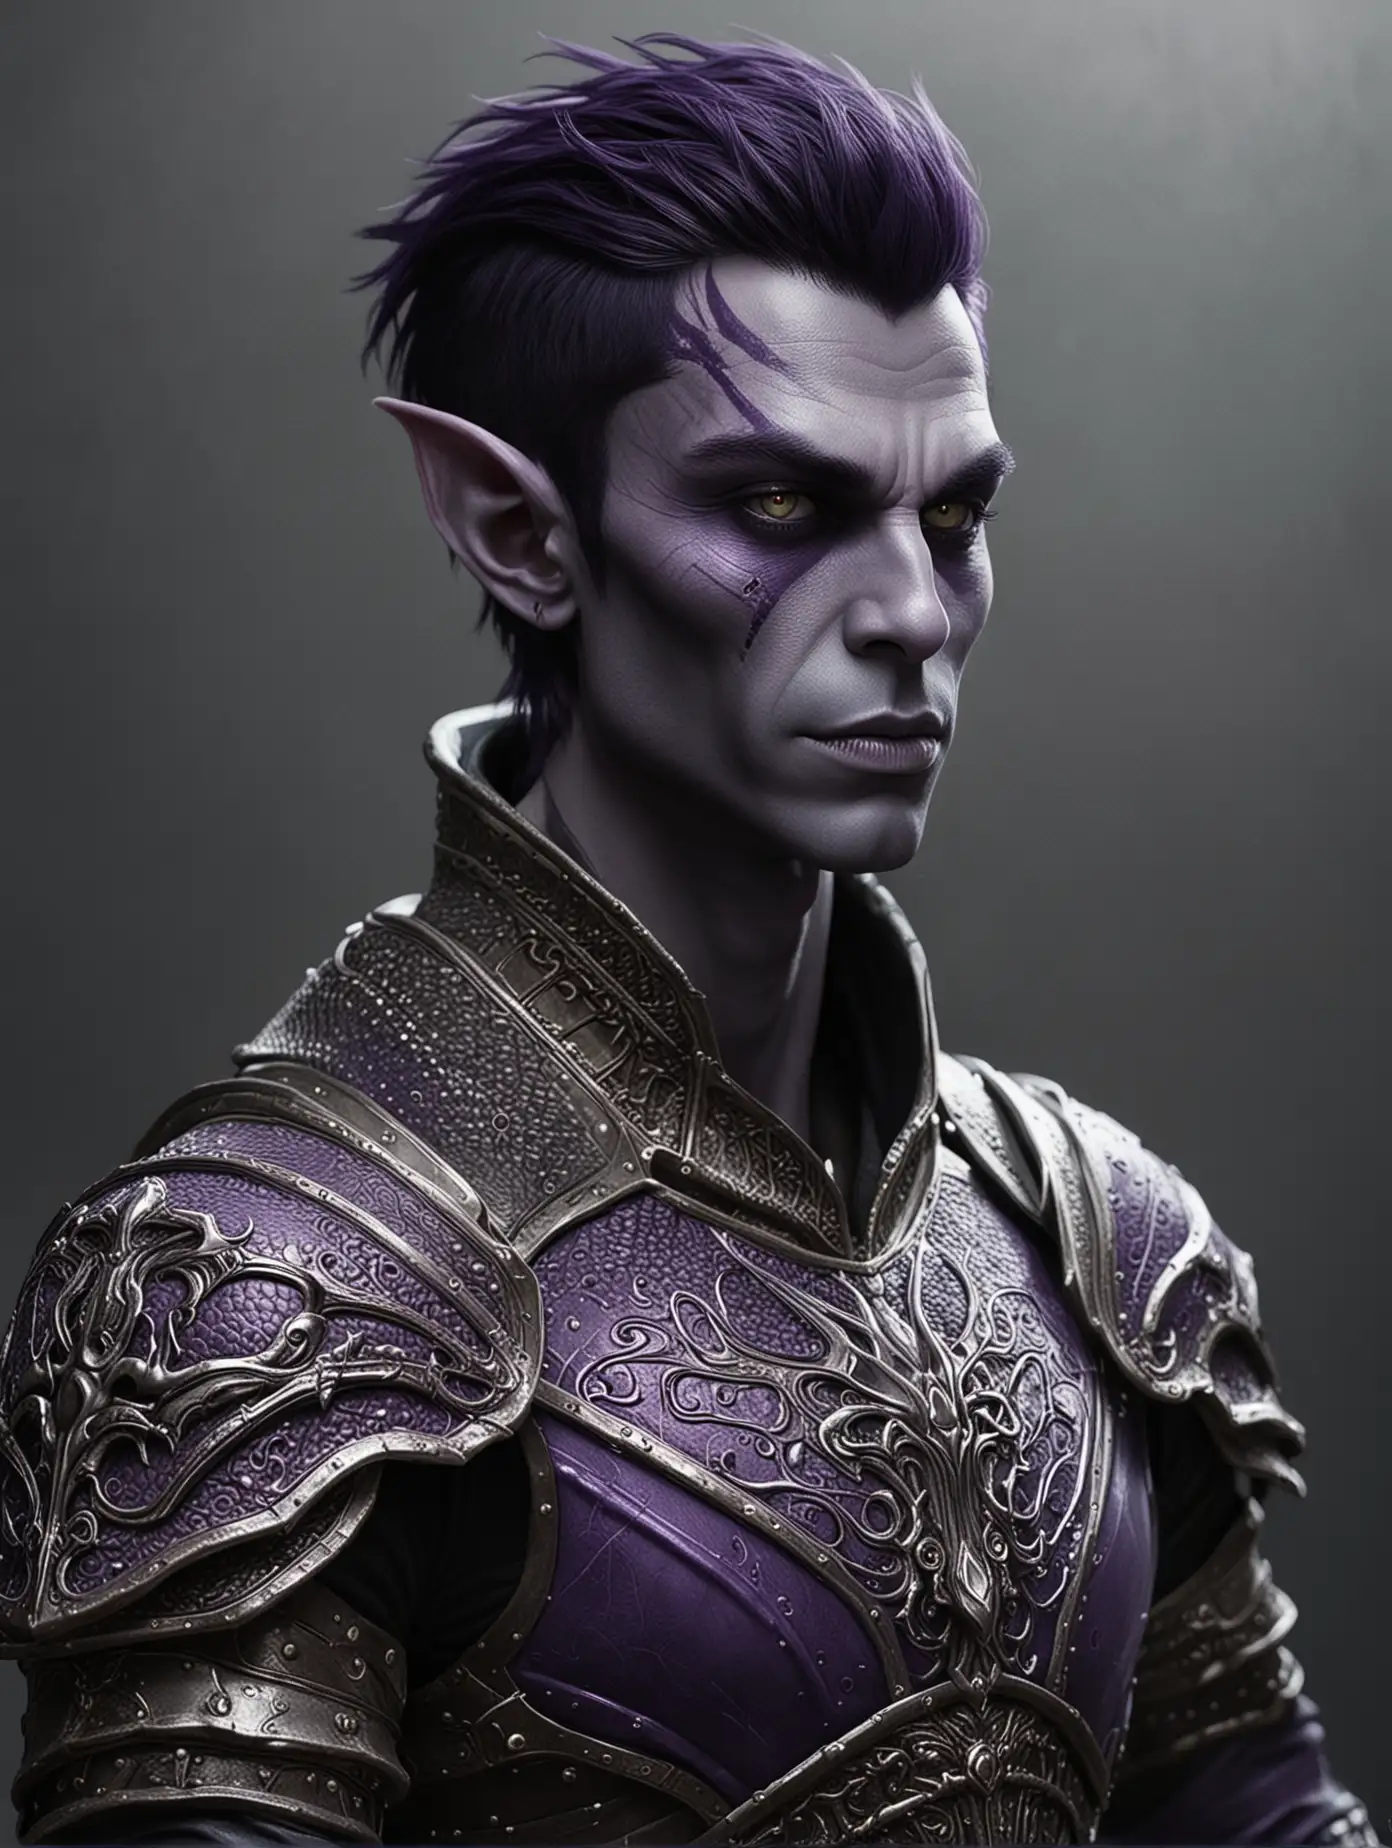 ((alien man) | (young man)) (medieval fantasy)), (purple skin:1.39), [drow/goblin], (short hair;dark hair) (elaborate armour)